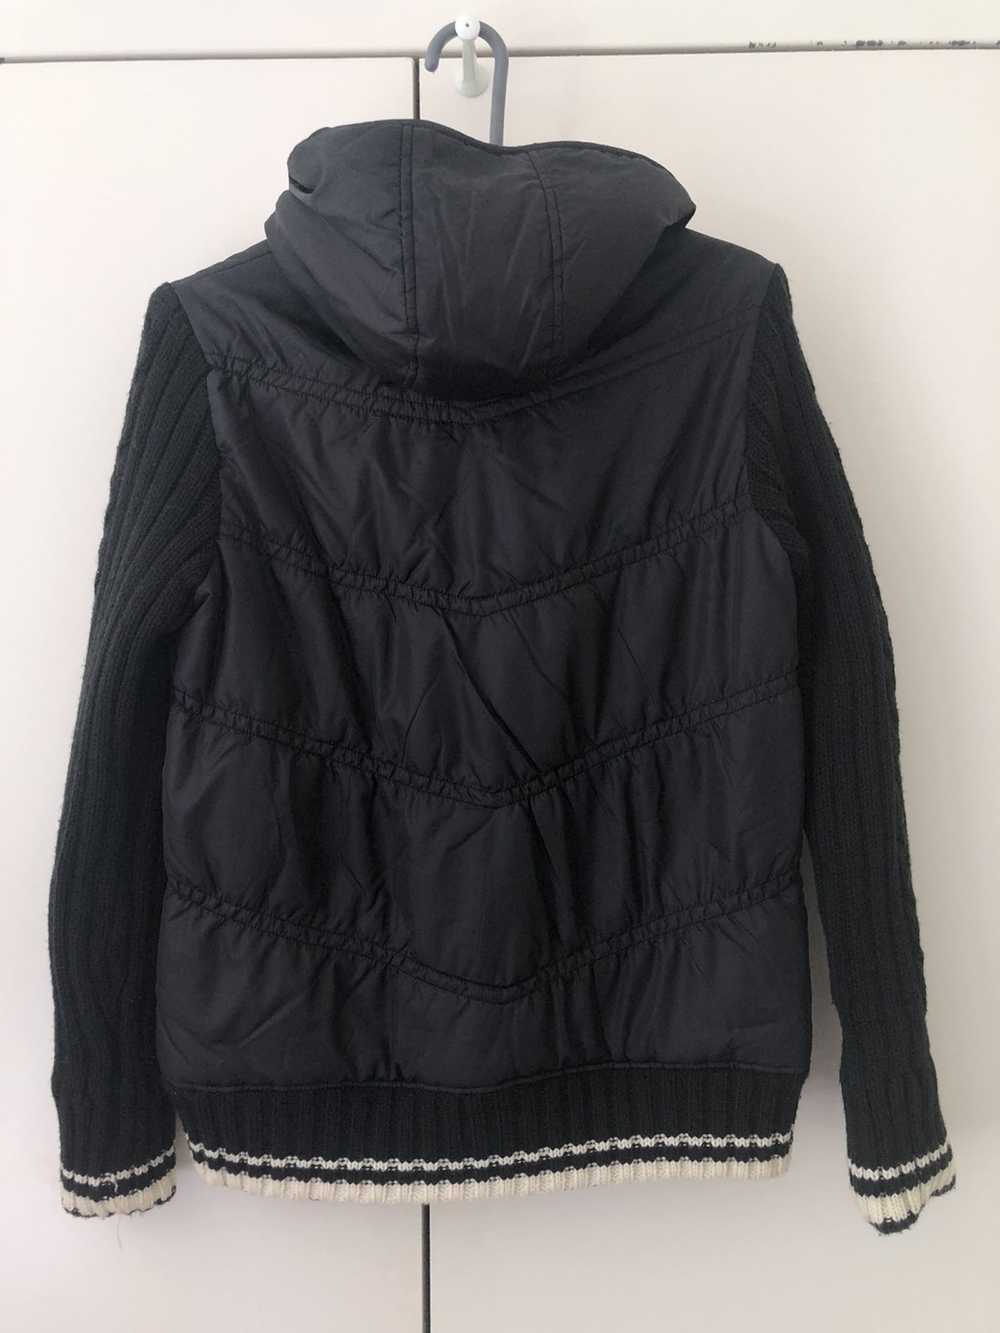 Converse Knit puffy light jacket womens large size - image 2